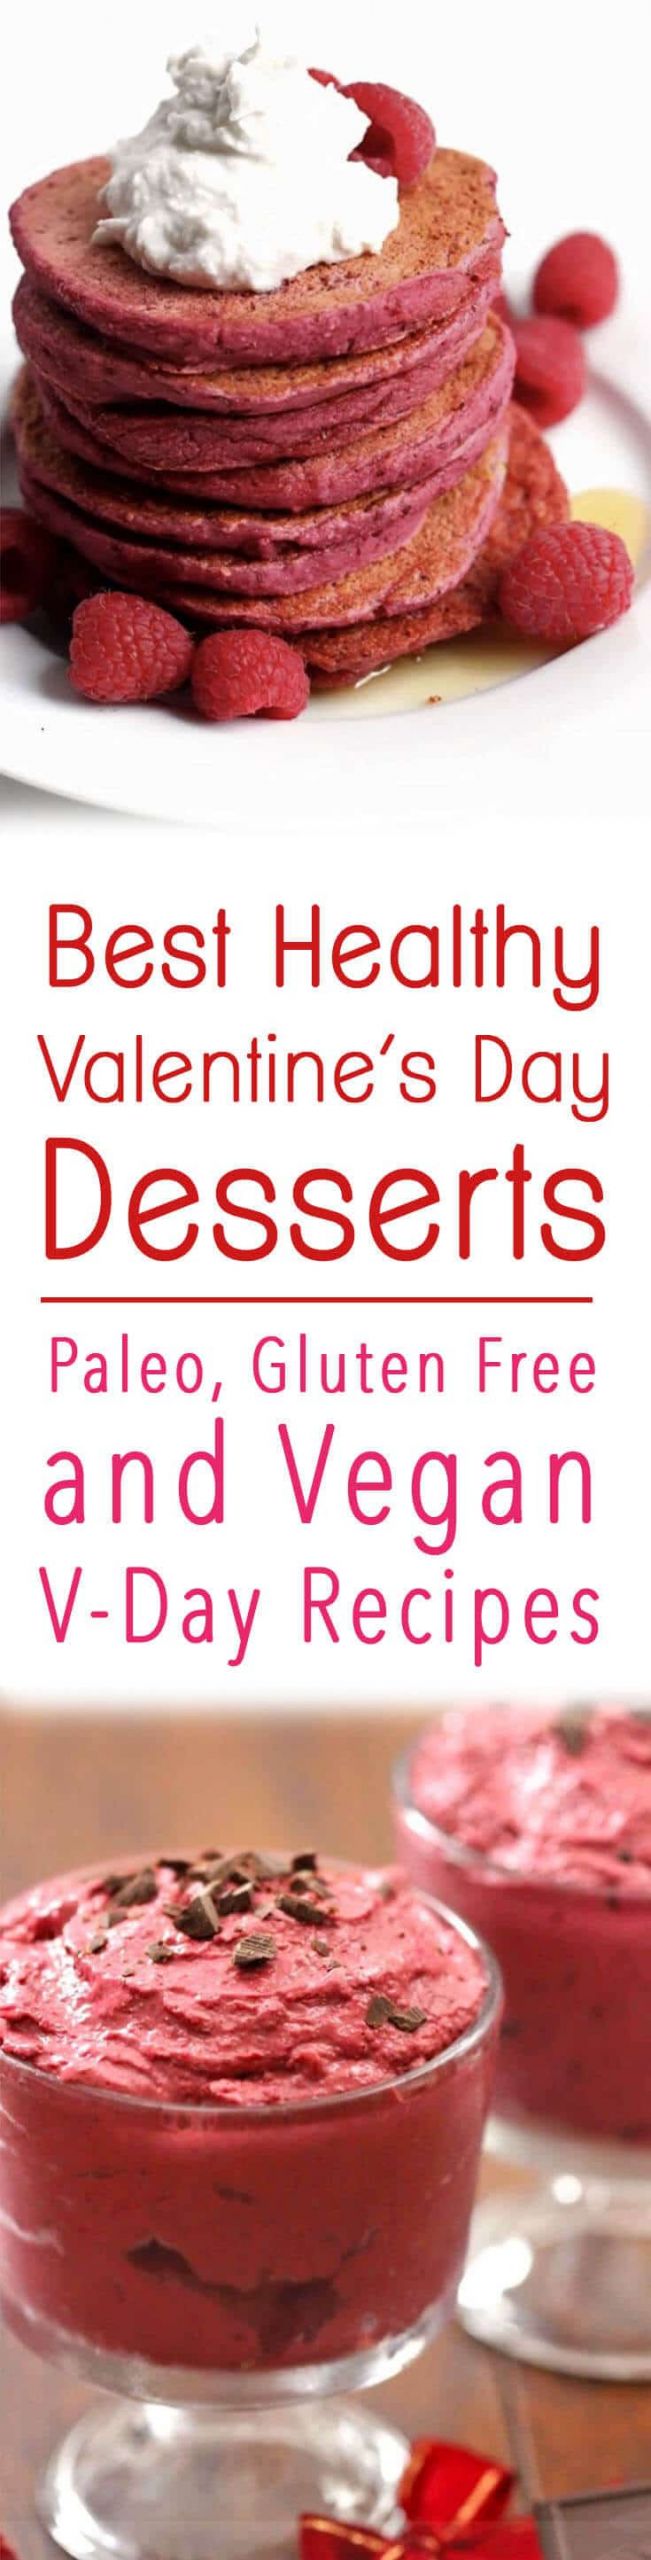 Healthy Valentine Desserts
 35 Best Healthy Valentine’s Day Desserts